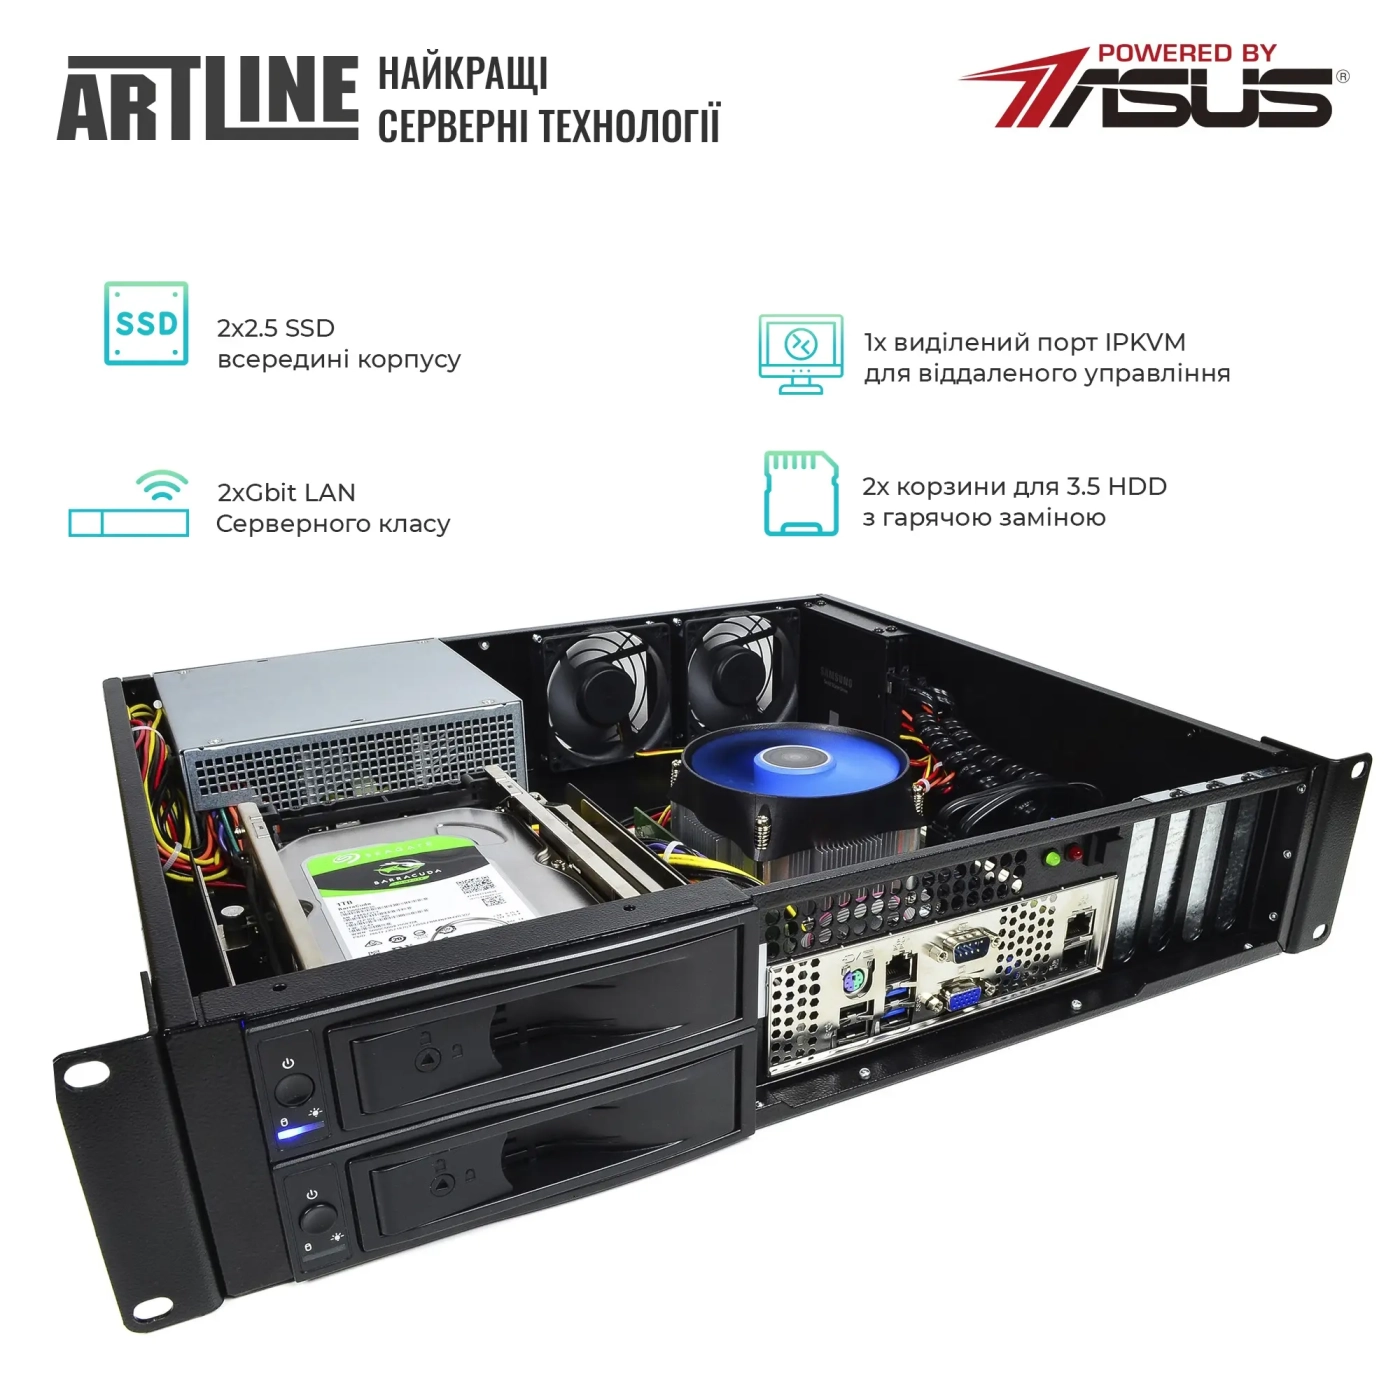 Купить Сервер ARTLINE Business R37 (R37v65) - фото 2